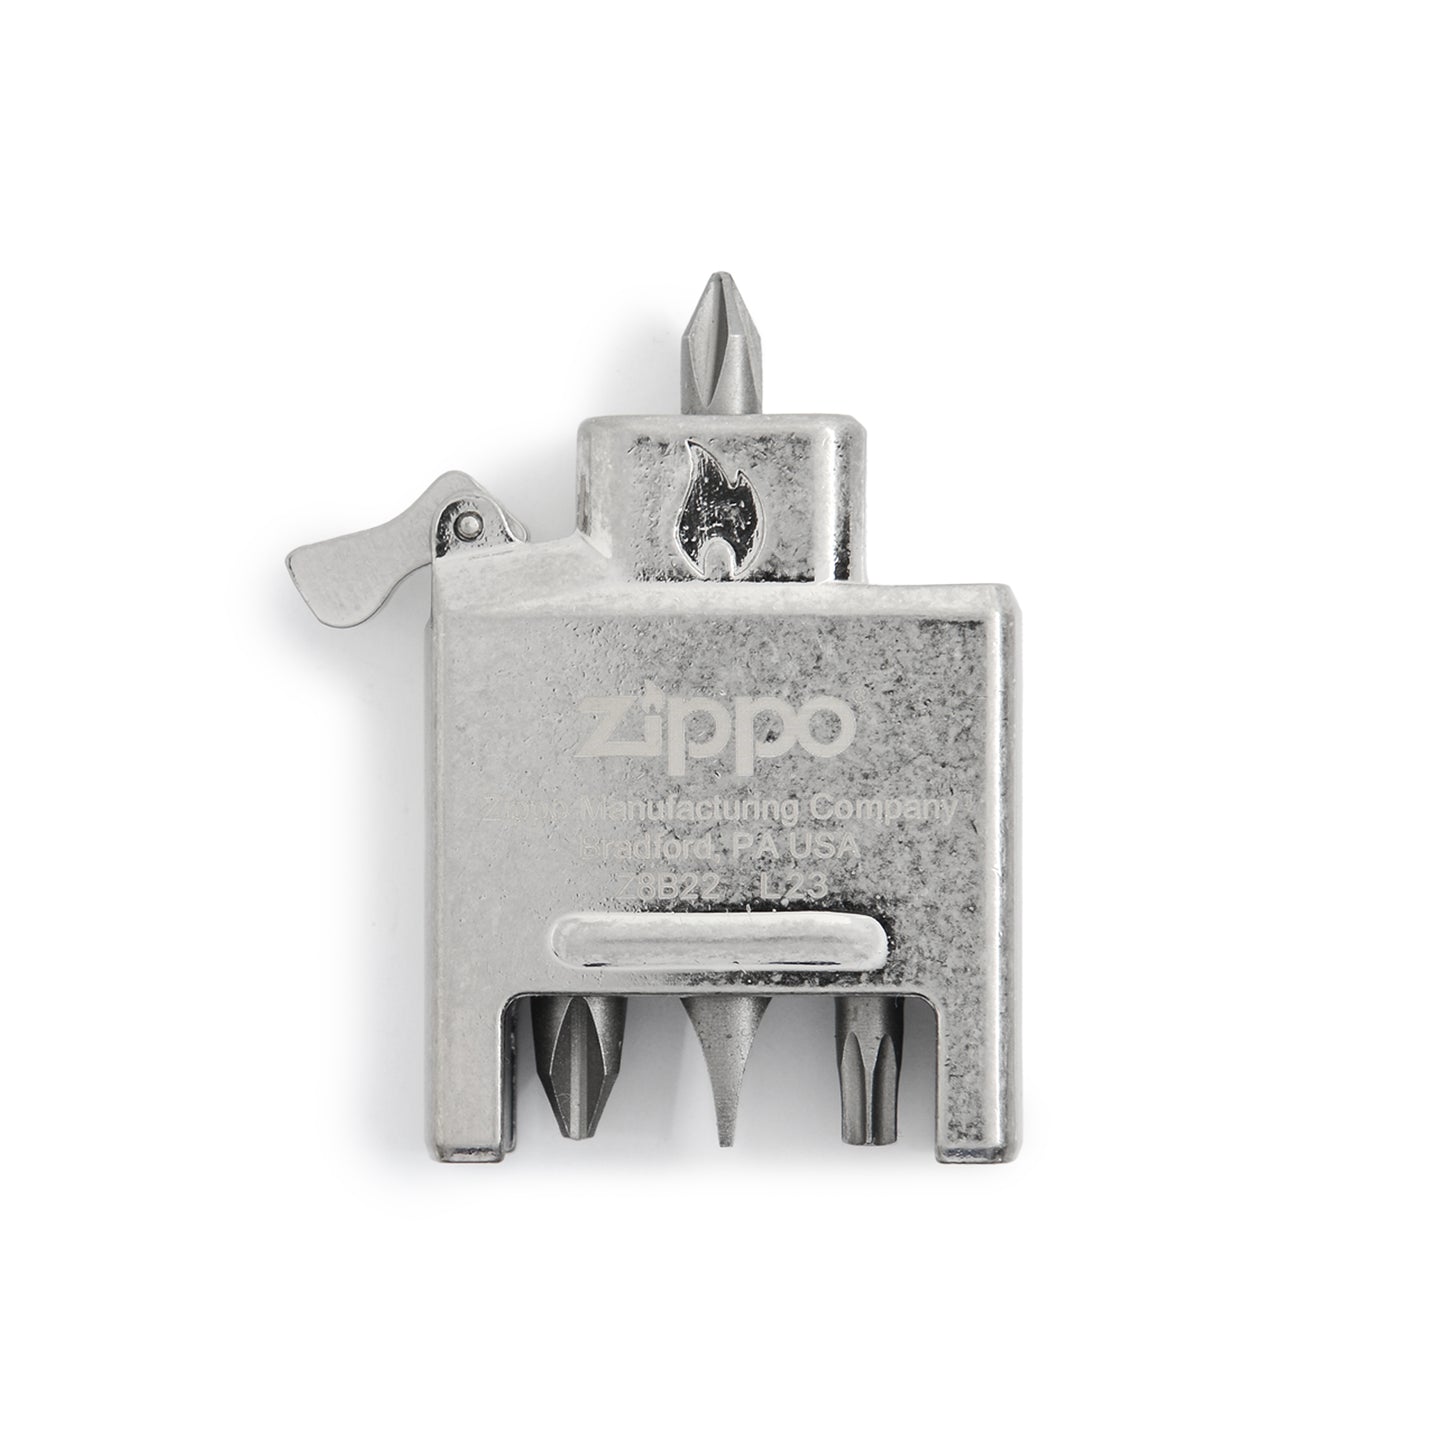 Zippo Bit Safe Lighter Insert